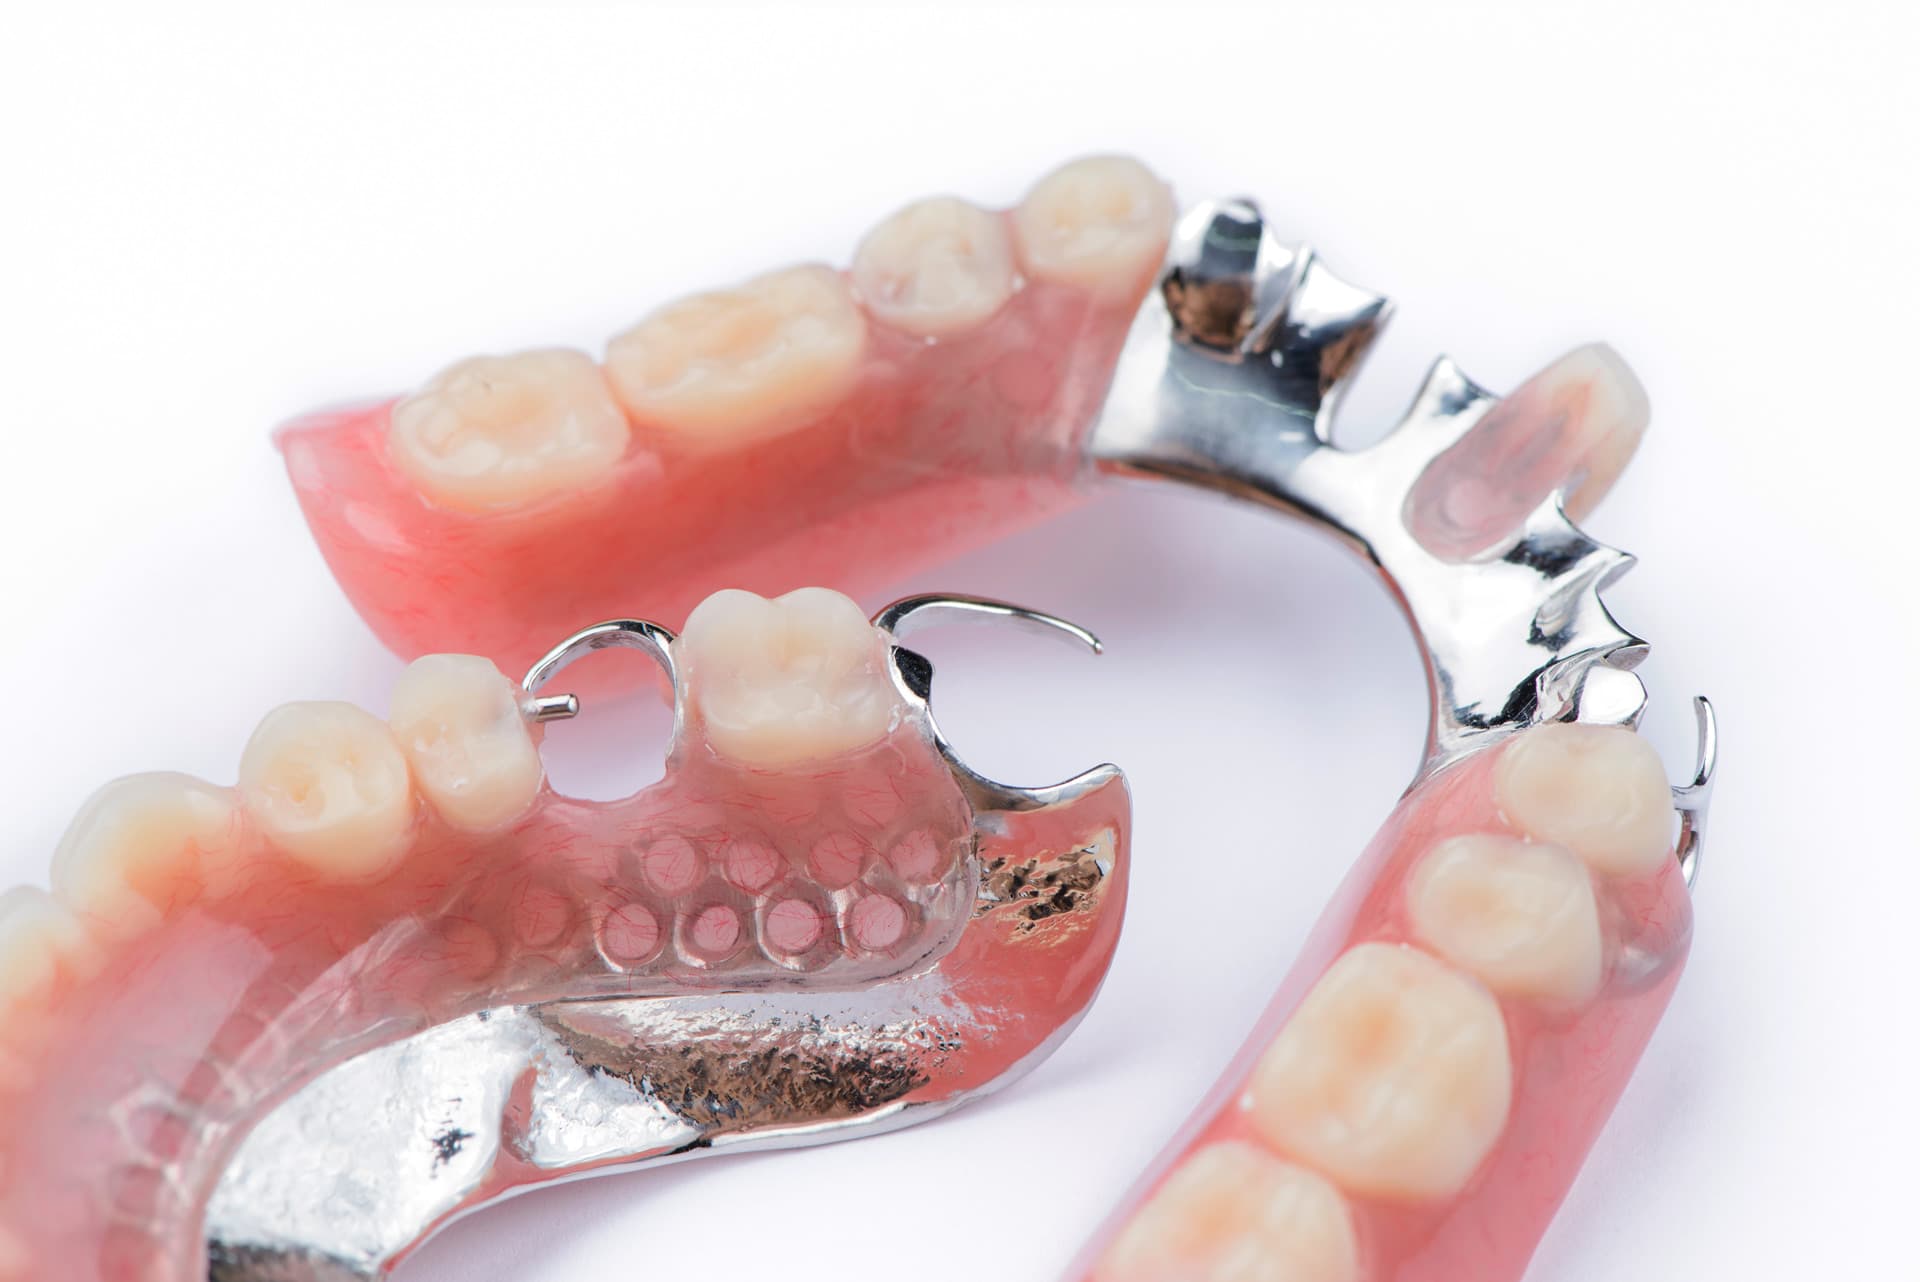 Prótesis dental removible en Narón